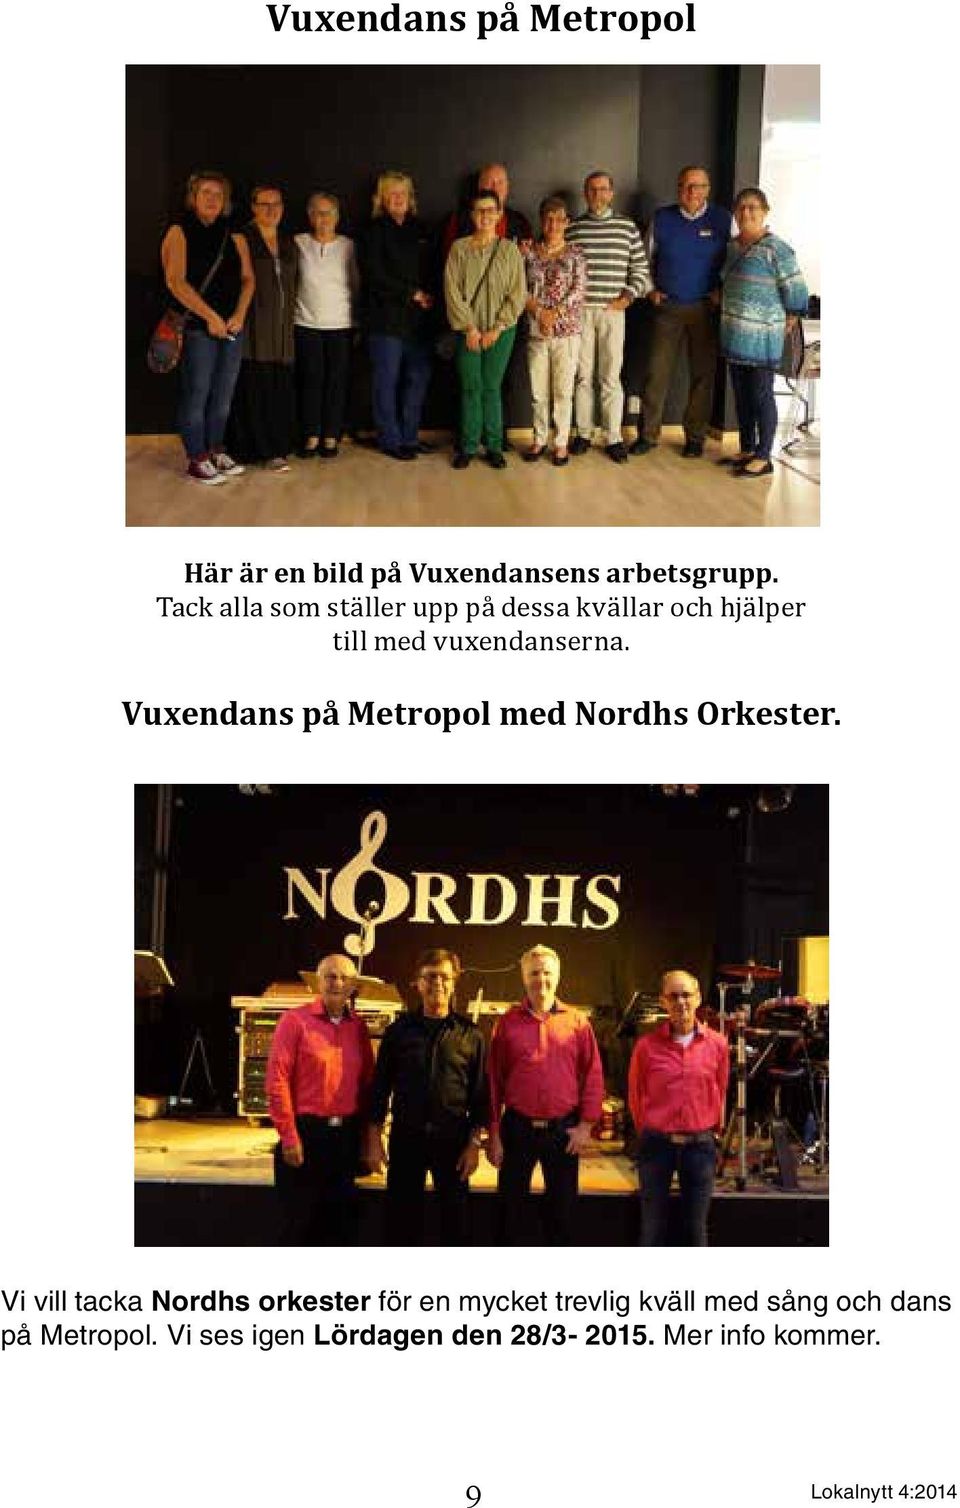 Vuxendans på Metropol med Nordhs Orkester.